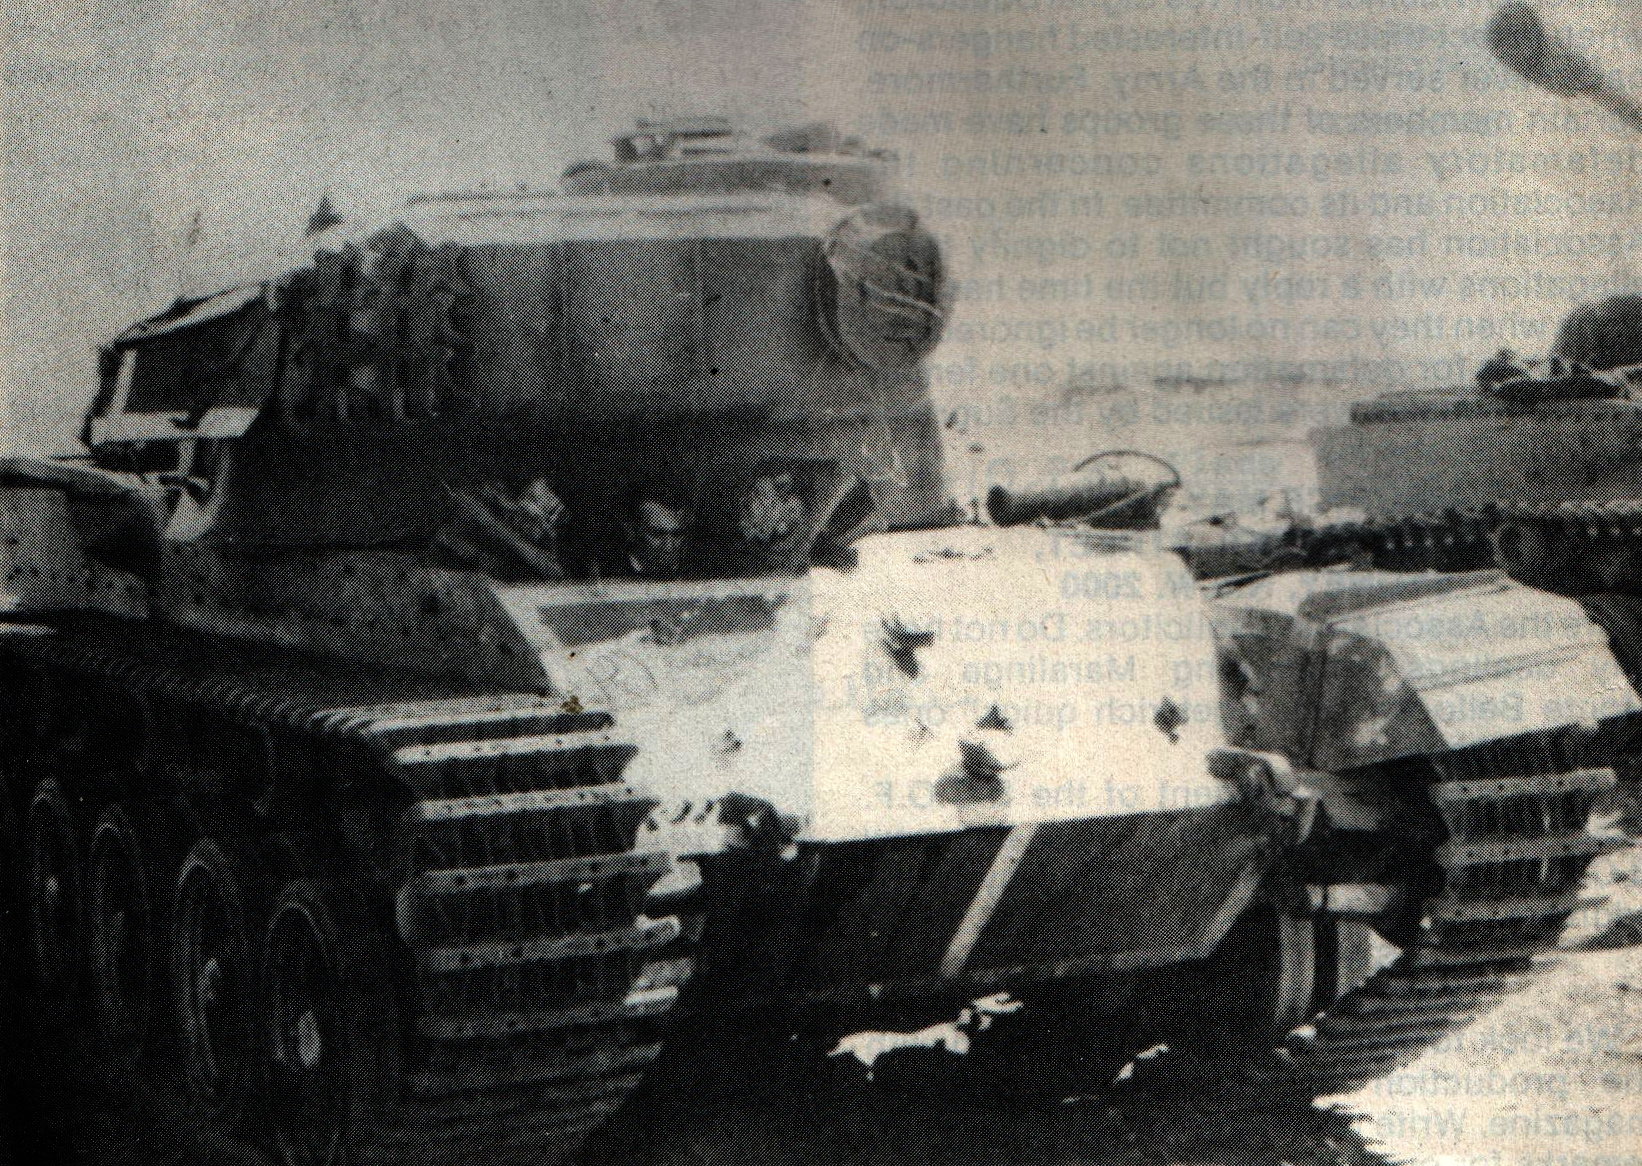 Egy a Matilda-hadműveletben részt vevő ausztrál Centurion 1970. januárjában, Nui Dat térségében.